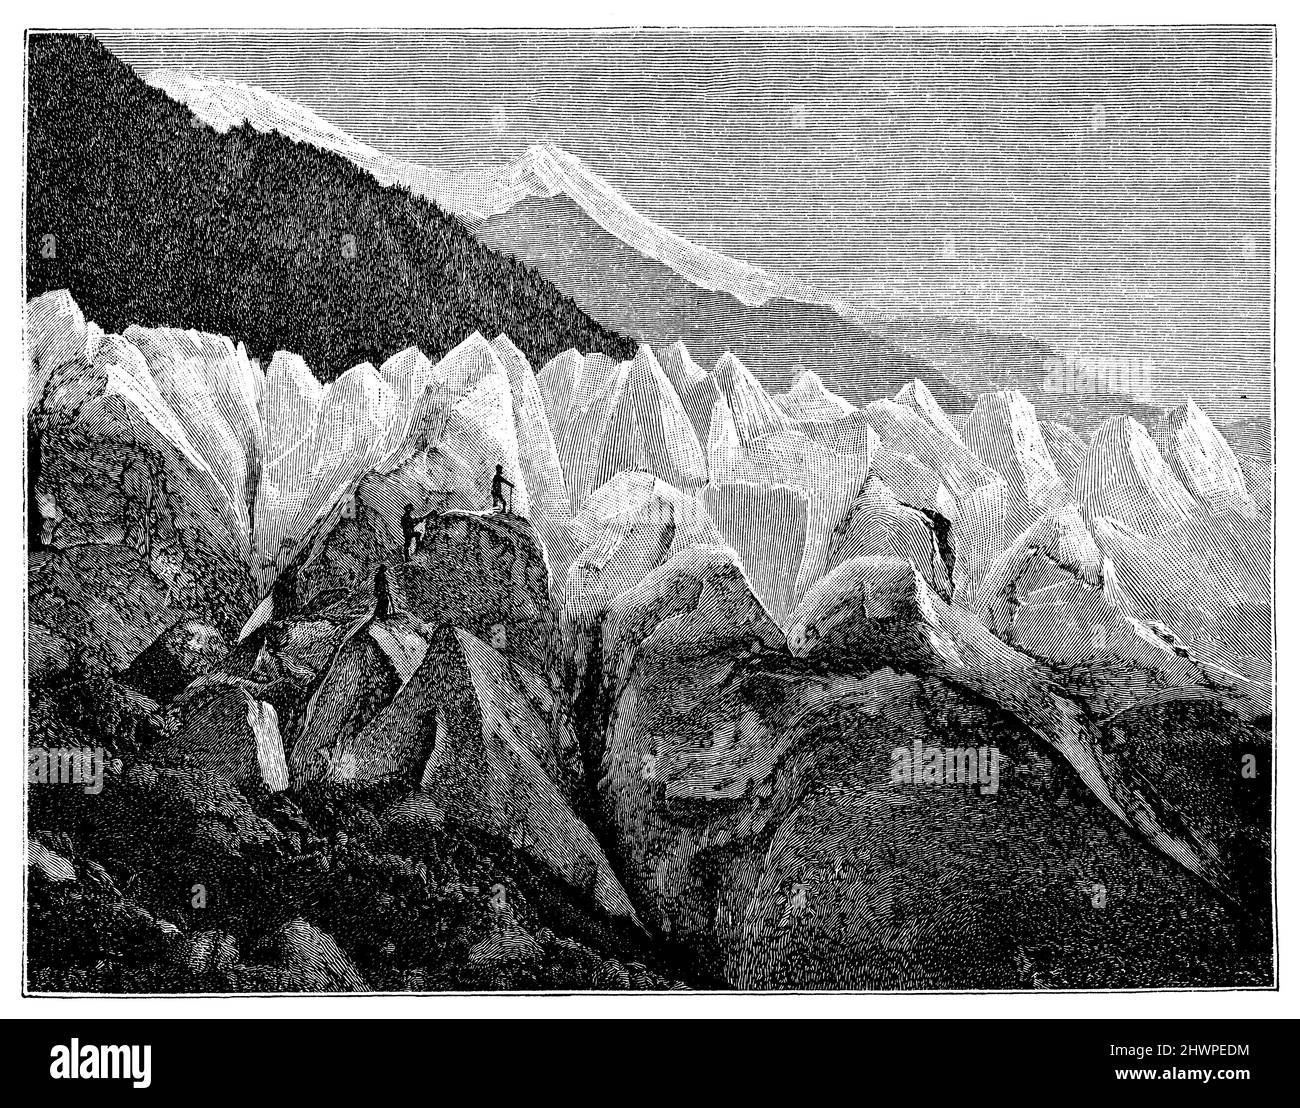 Eispyramiden des Bosson-Gletschers am Nordhang des Mont Blanc, , (Atlas, 1909), Eispyramiden des Bossongletschers am Nordabhang des Montblanc, Pyramides de Glace du Glacier de Bossong sur le versant nord du Mont-Blanc Stockfoto